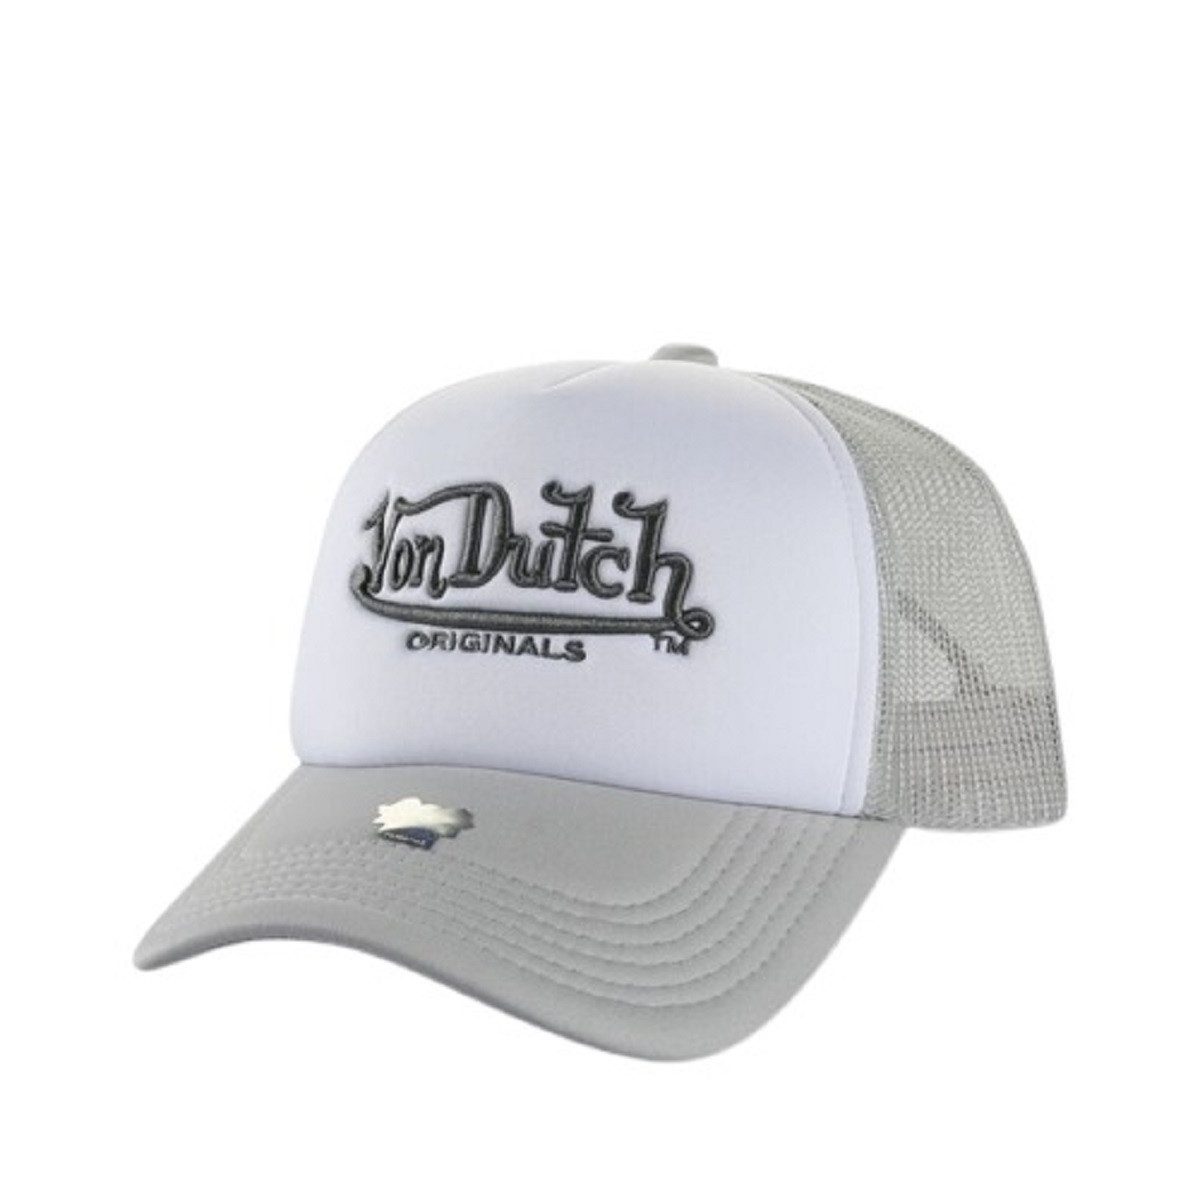 Von Dutch Trucker Cap Atlanta